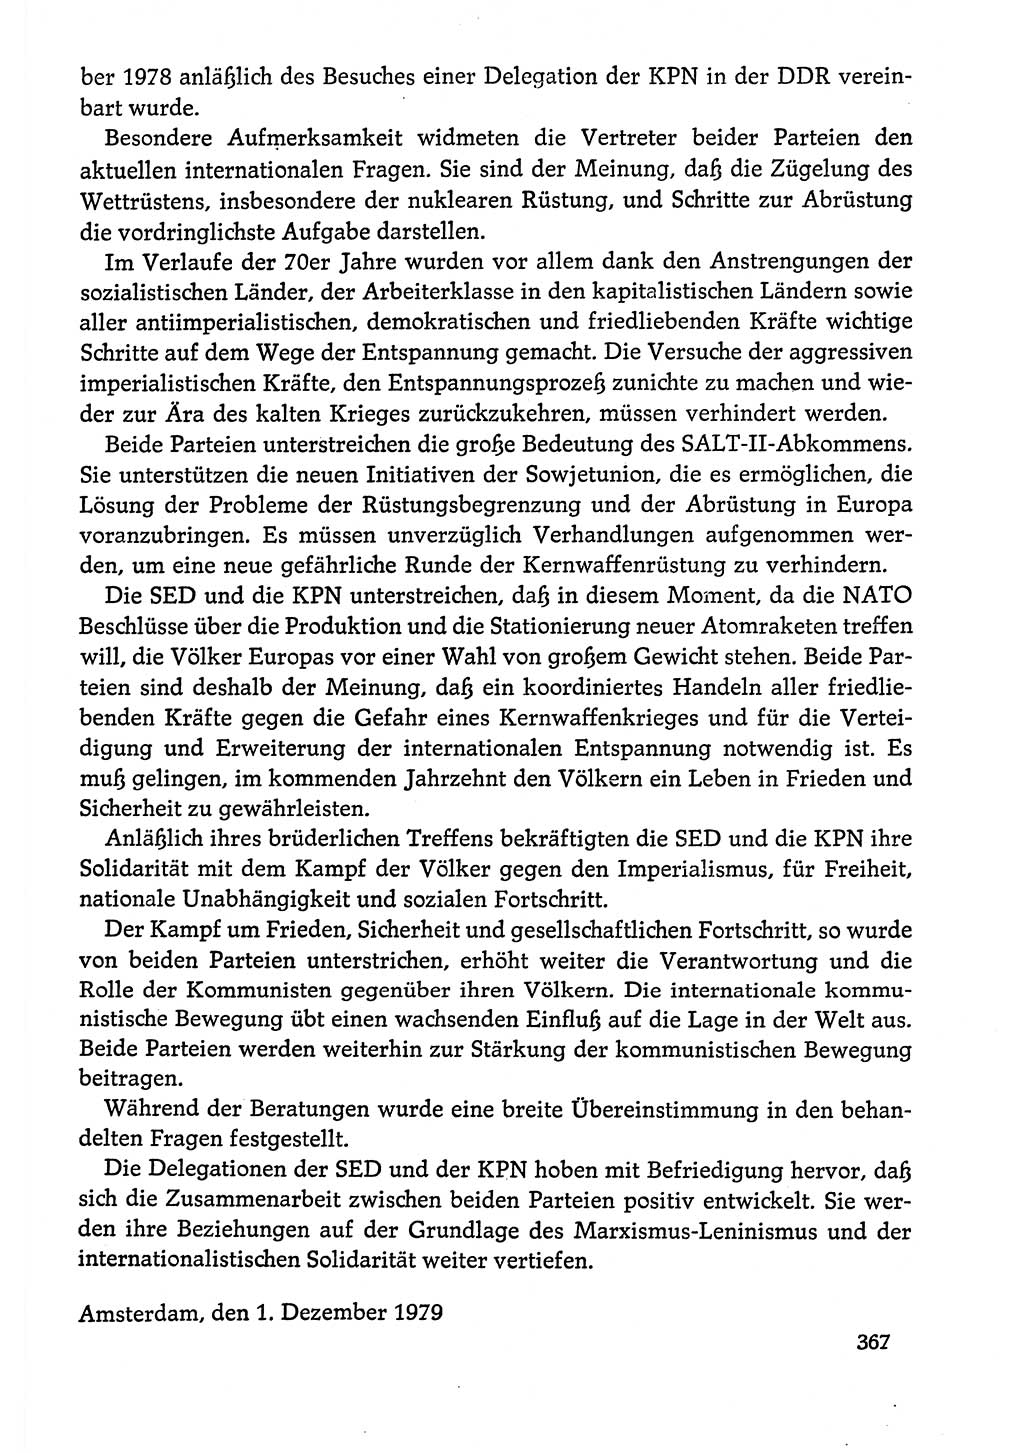 Dokumente der Sozialistischen Einheitspartei Deutschlands (SED) [Deutsche Demokratische Republik (DDR)] 1978-1979, Seite 367 (Dok. SED DDR 1978-1979, S. 367)